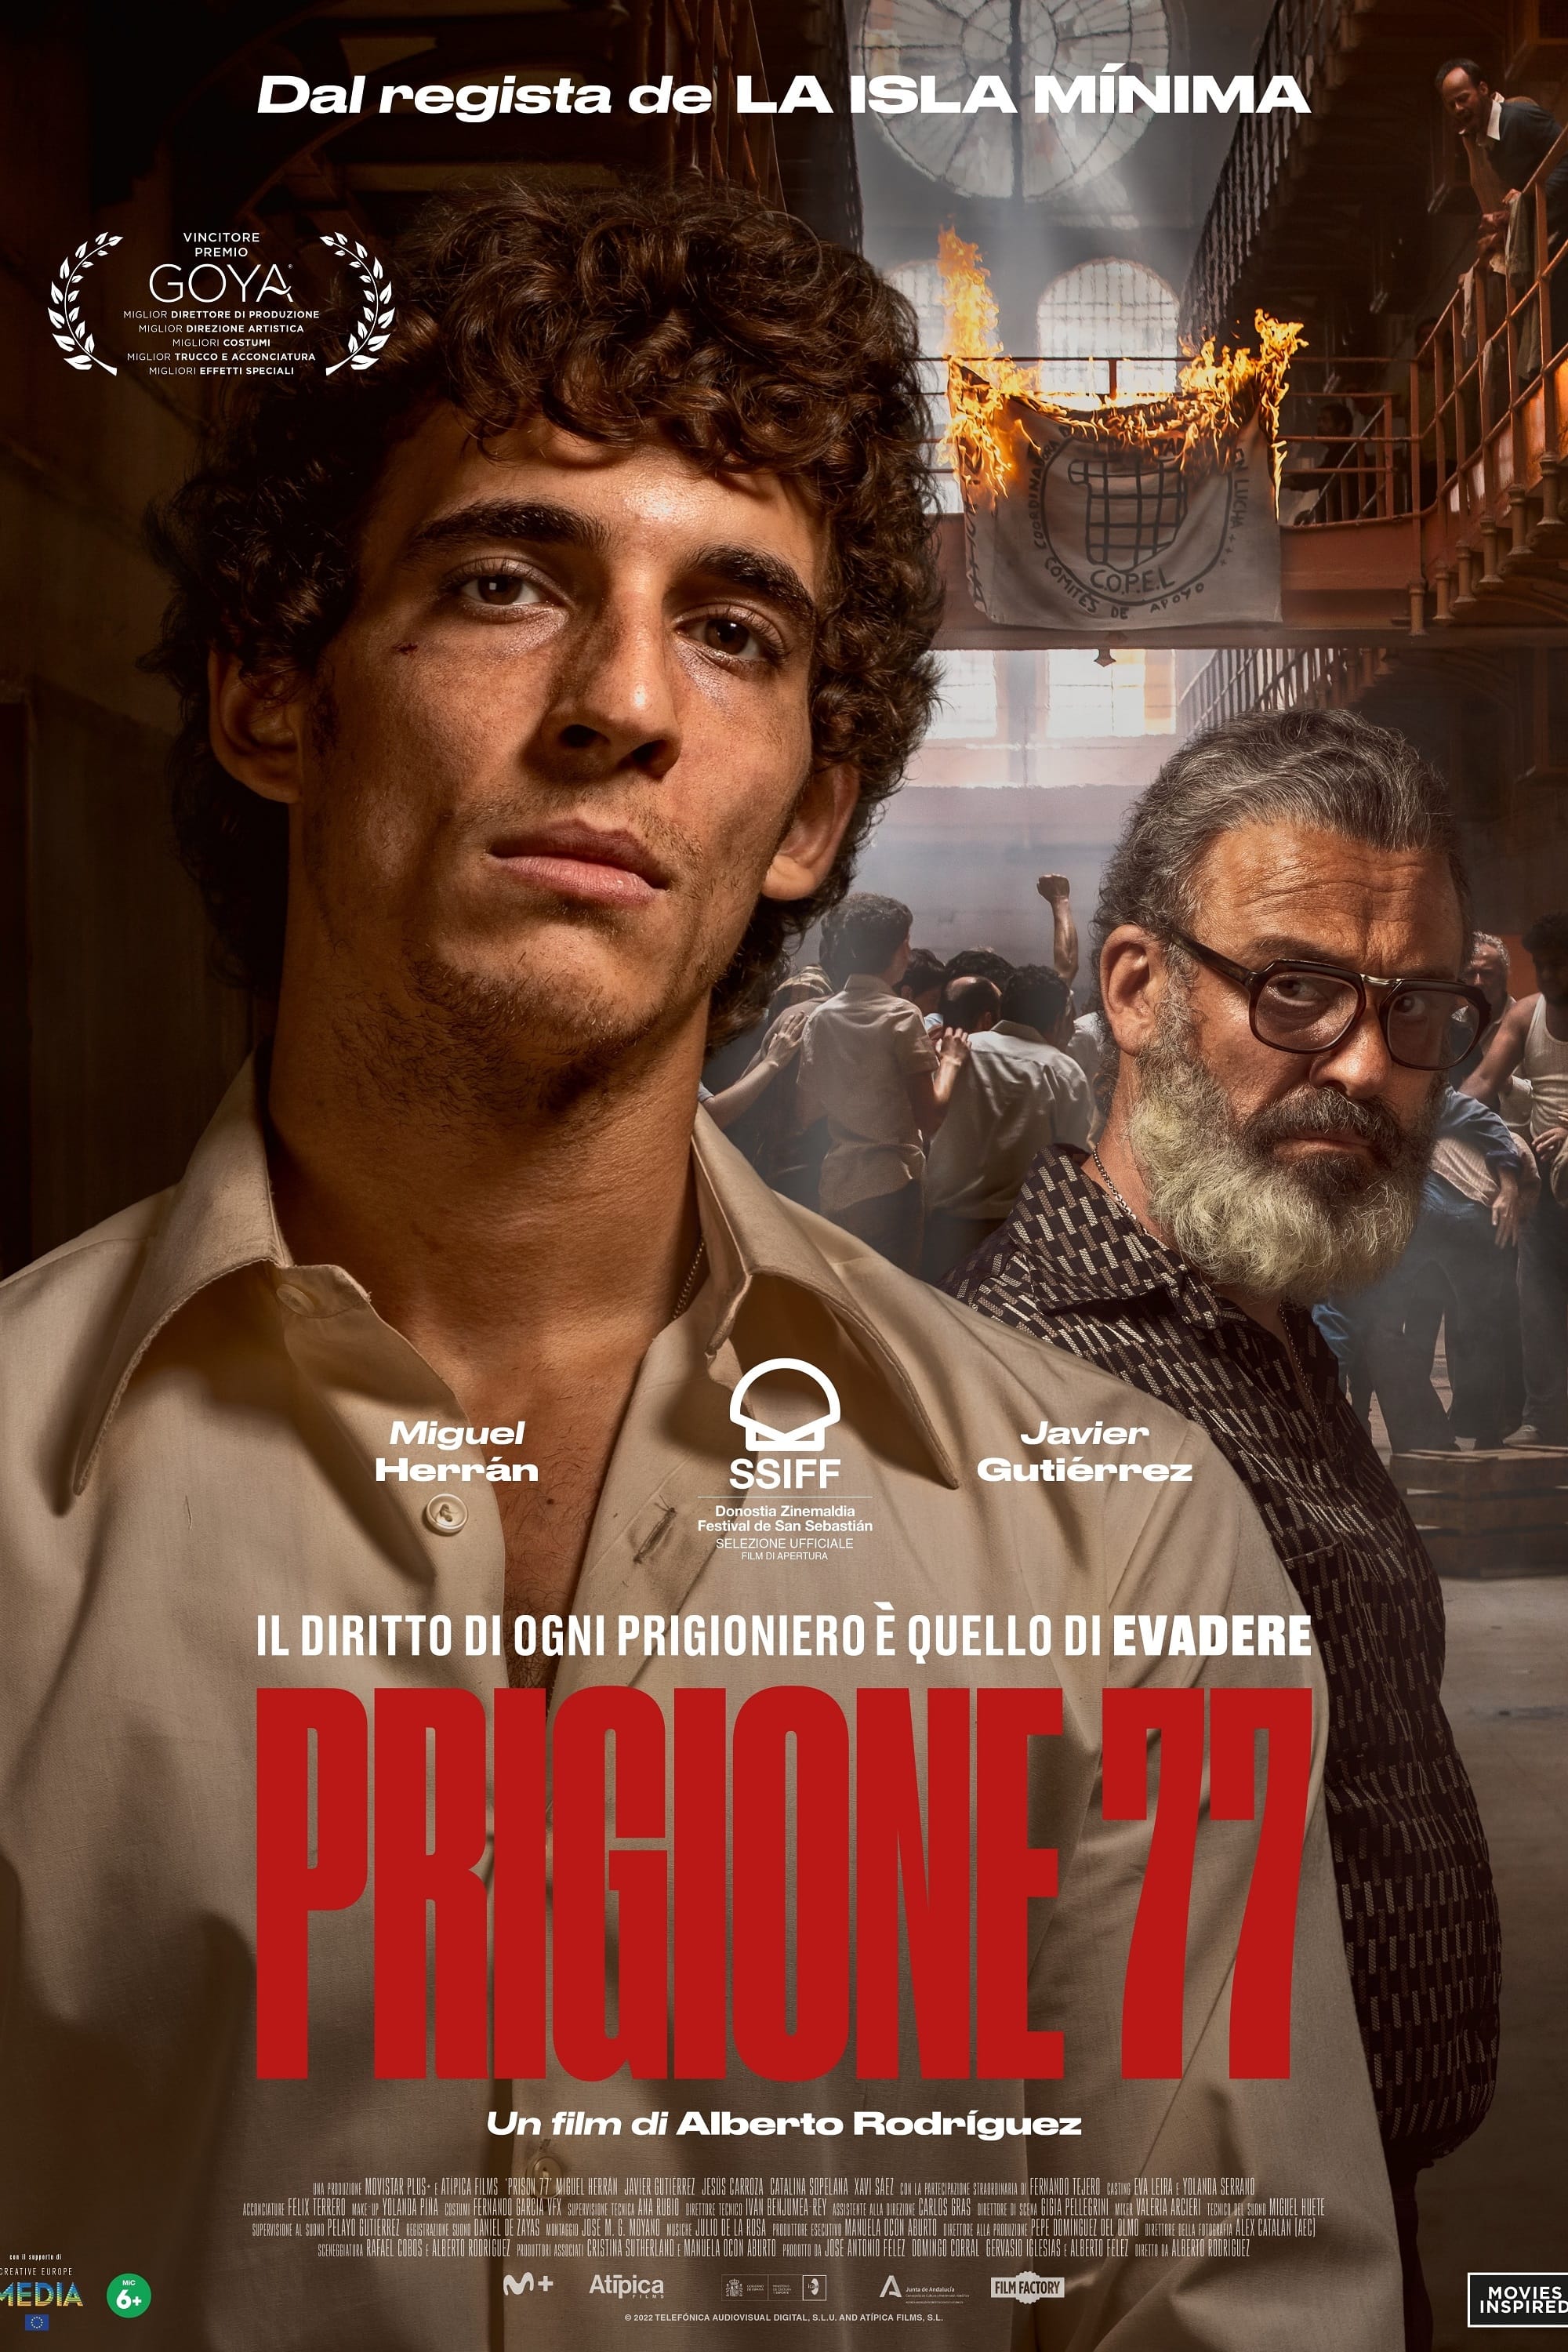 Prigione 77 film